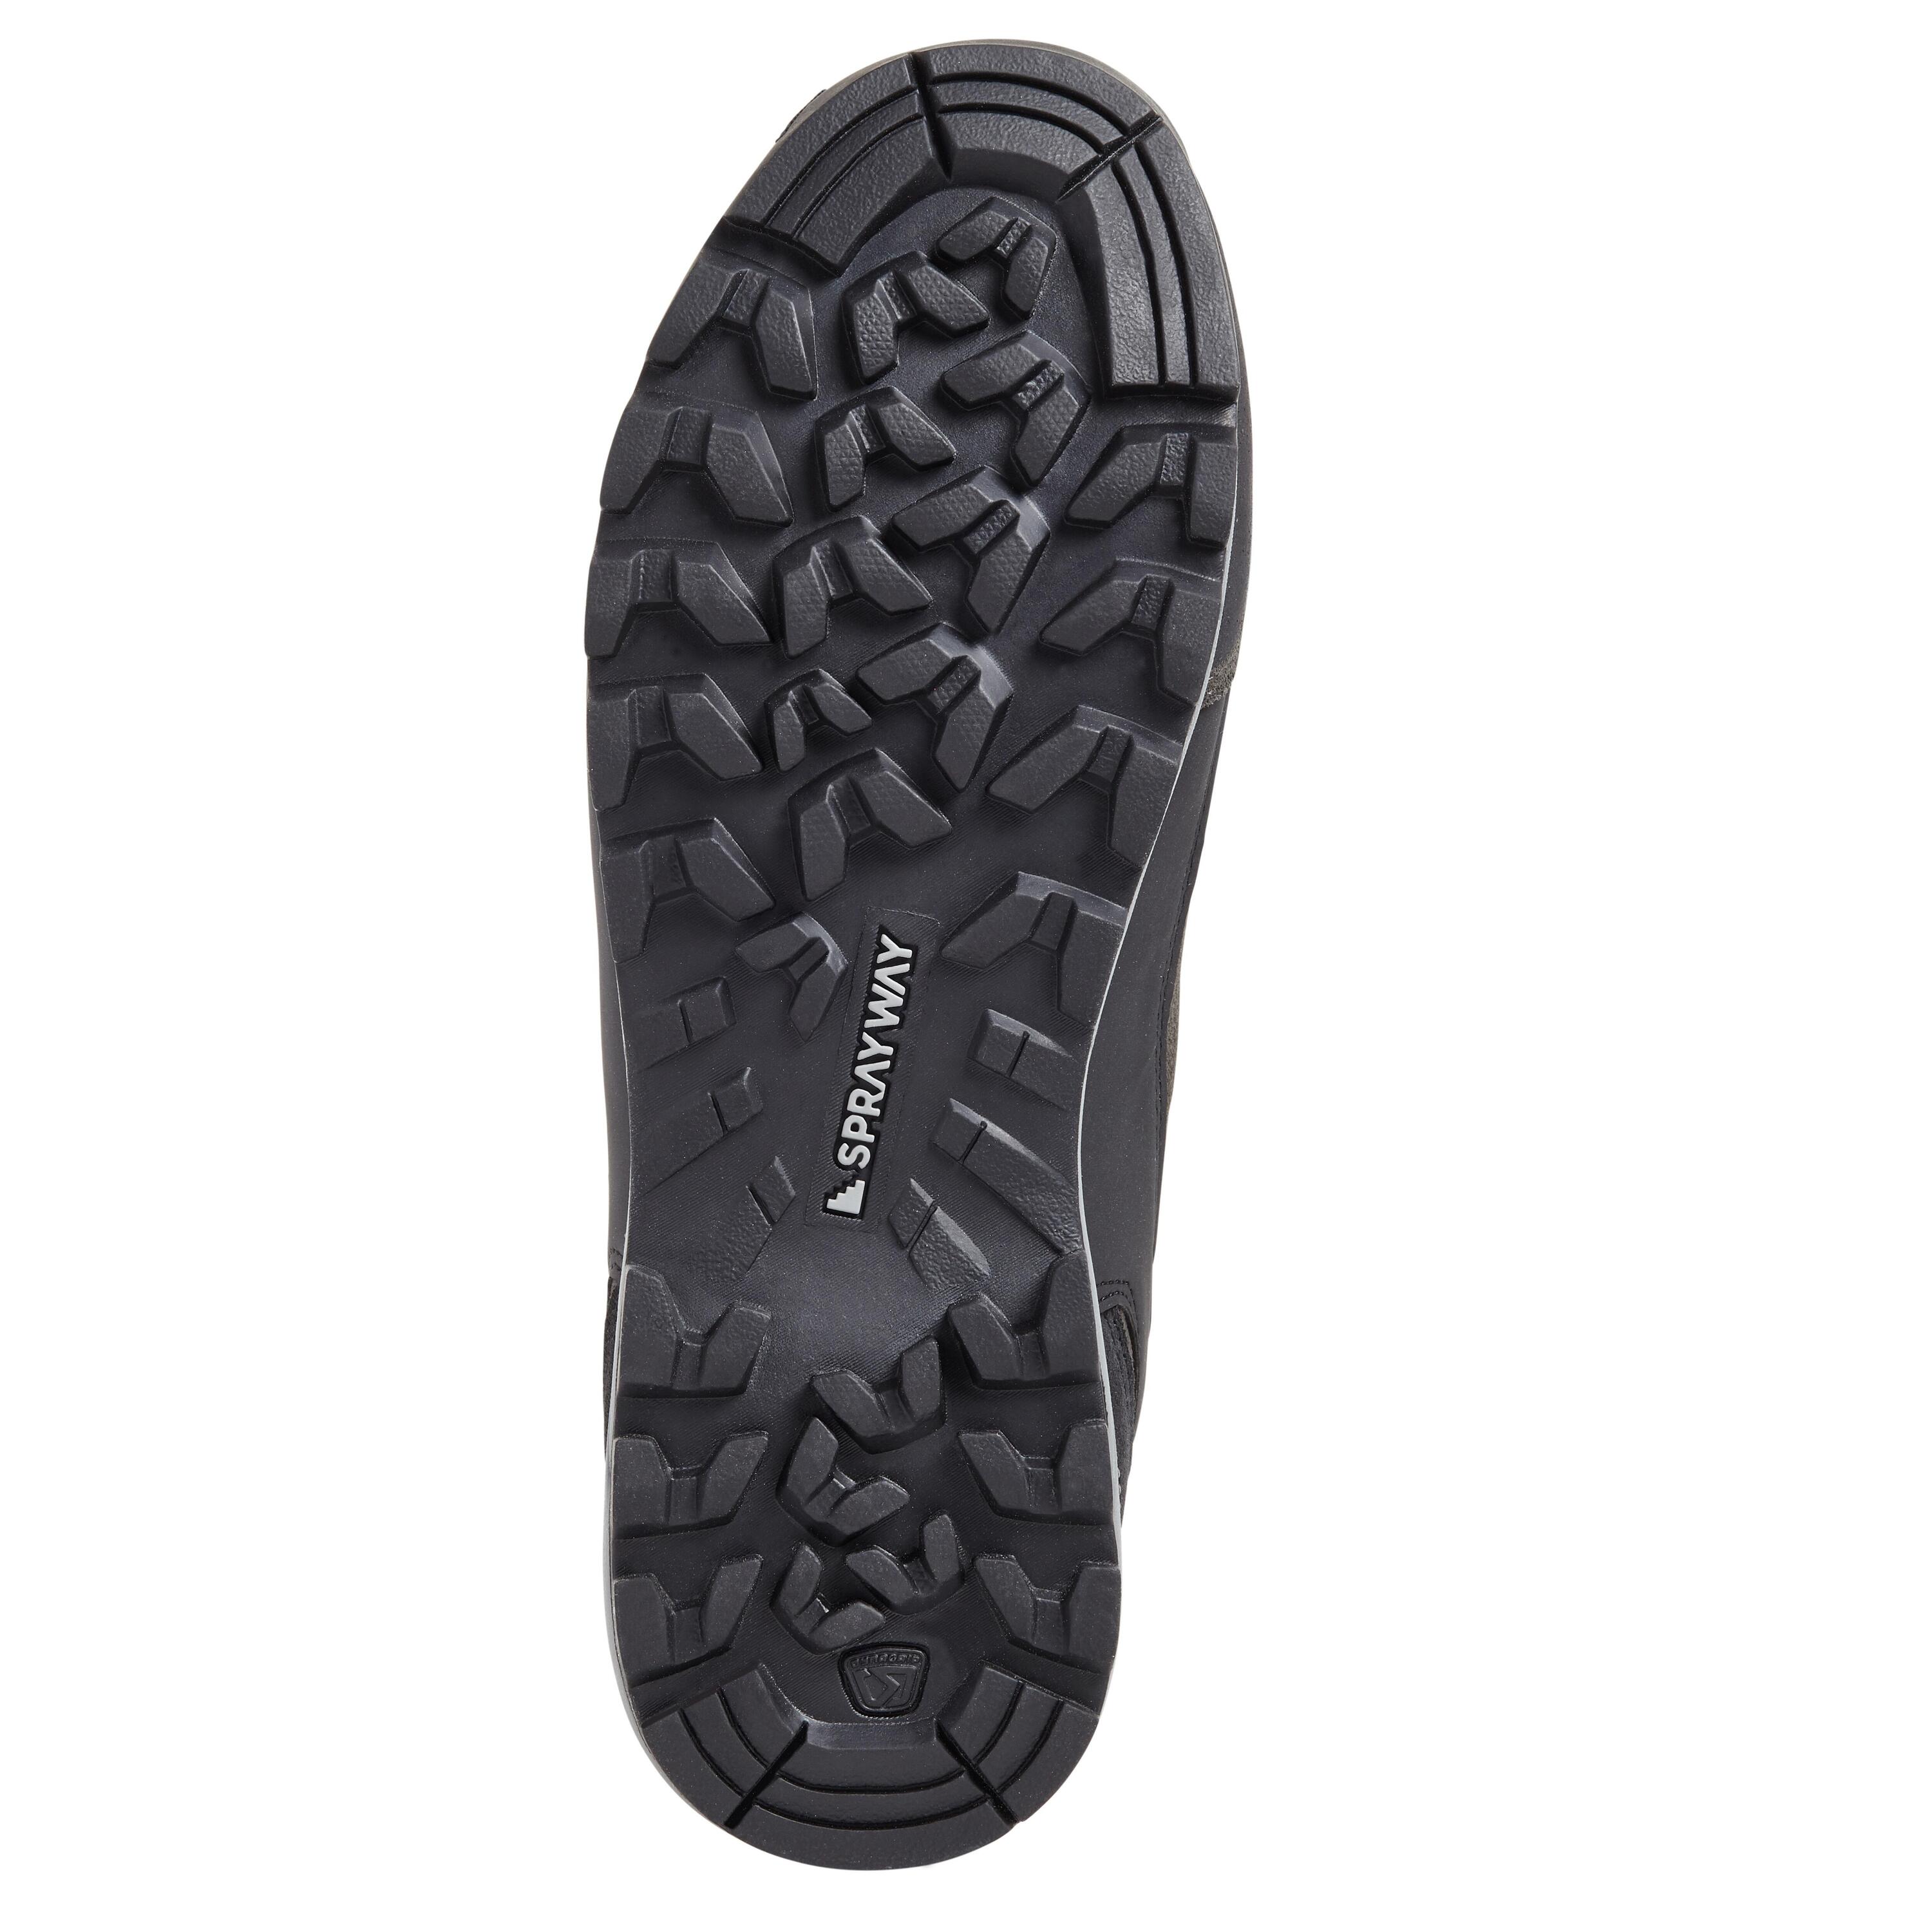 Men's waterproof walking boots - Sprayway Oxna mid - Charcoal 5/5